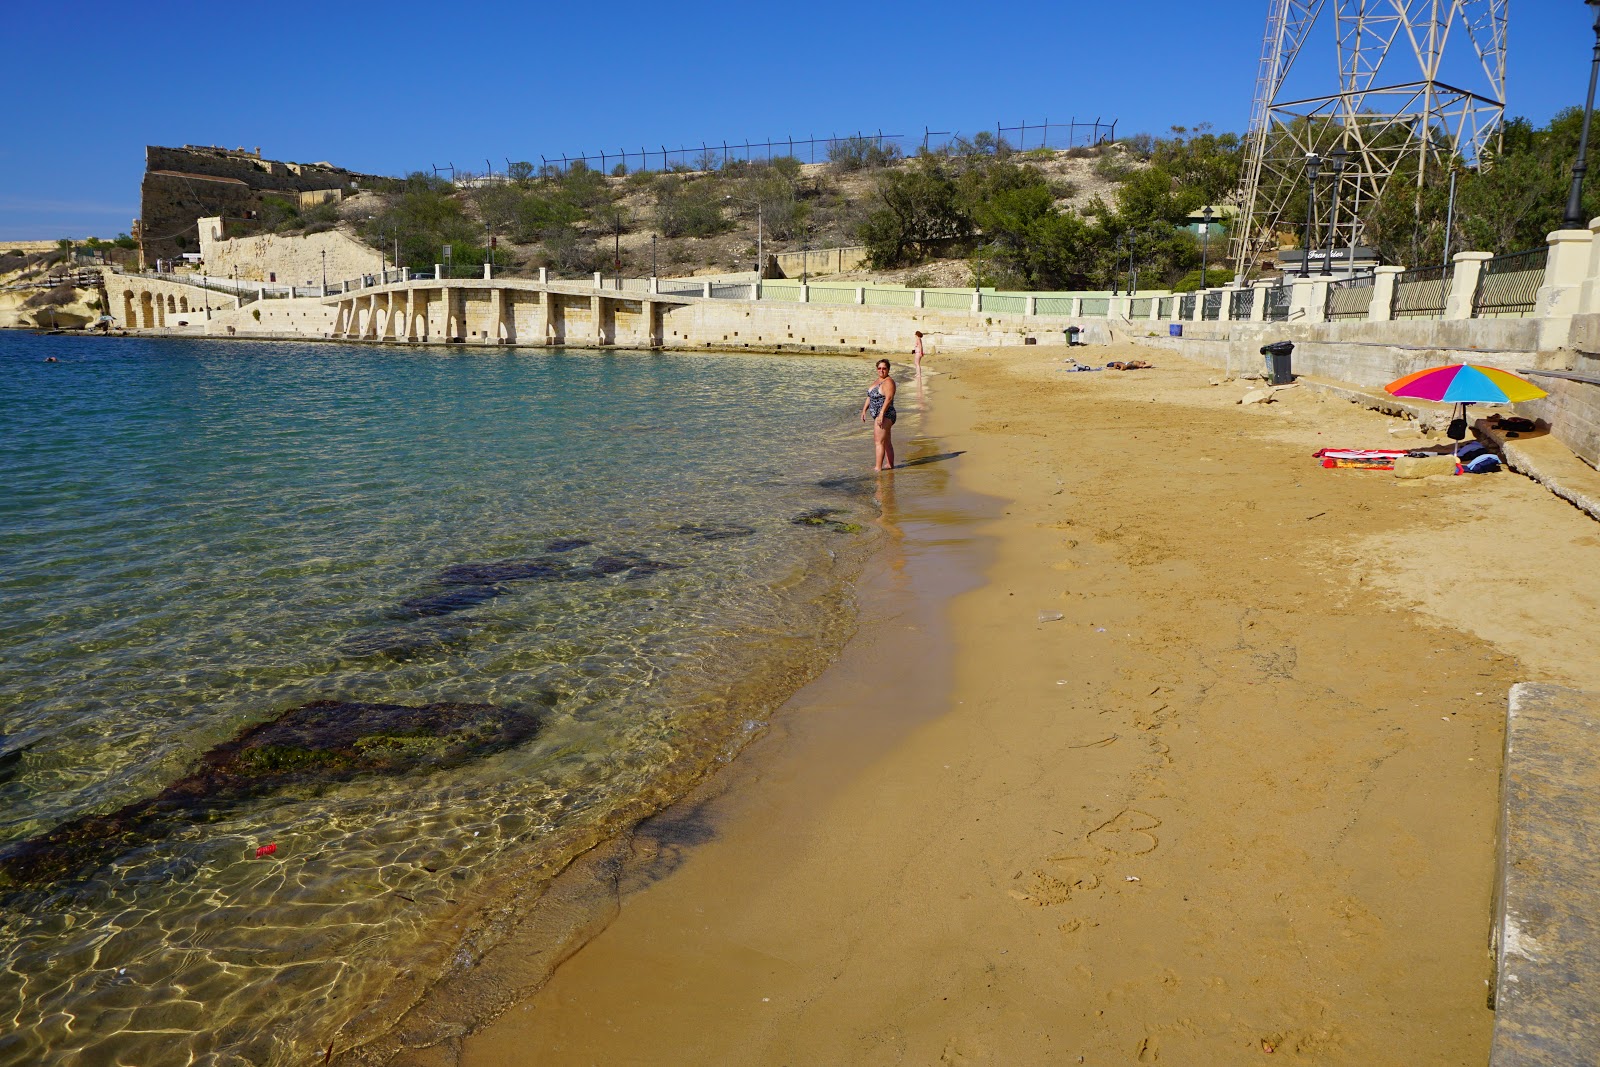 Fotografie cu Rinella Bay beach cu o suprafață de apa pură turcoaz